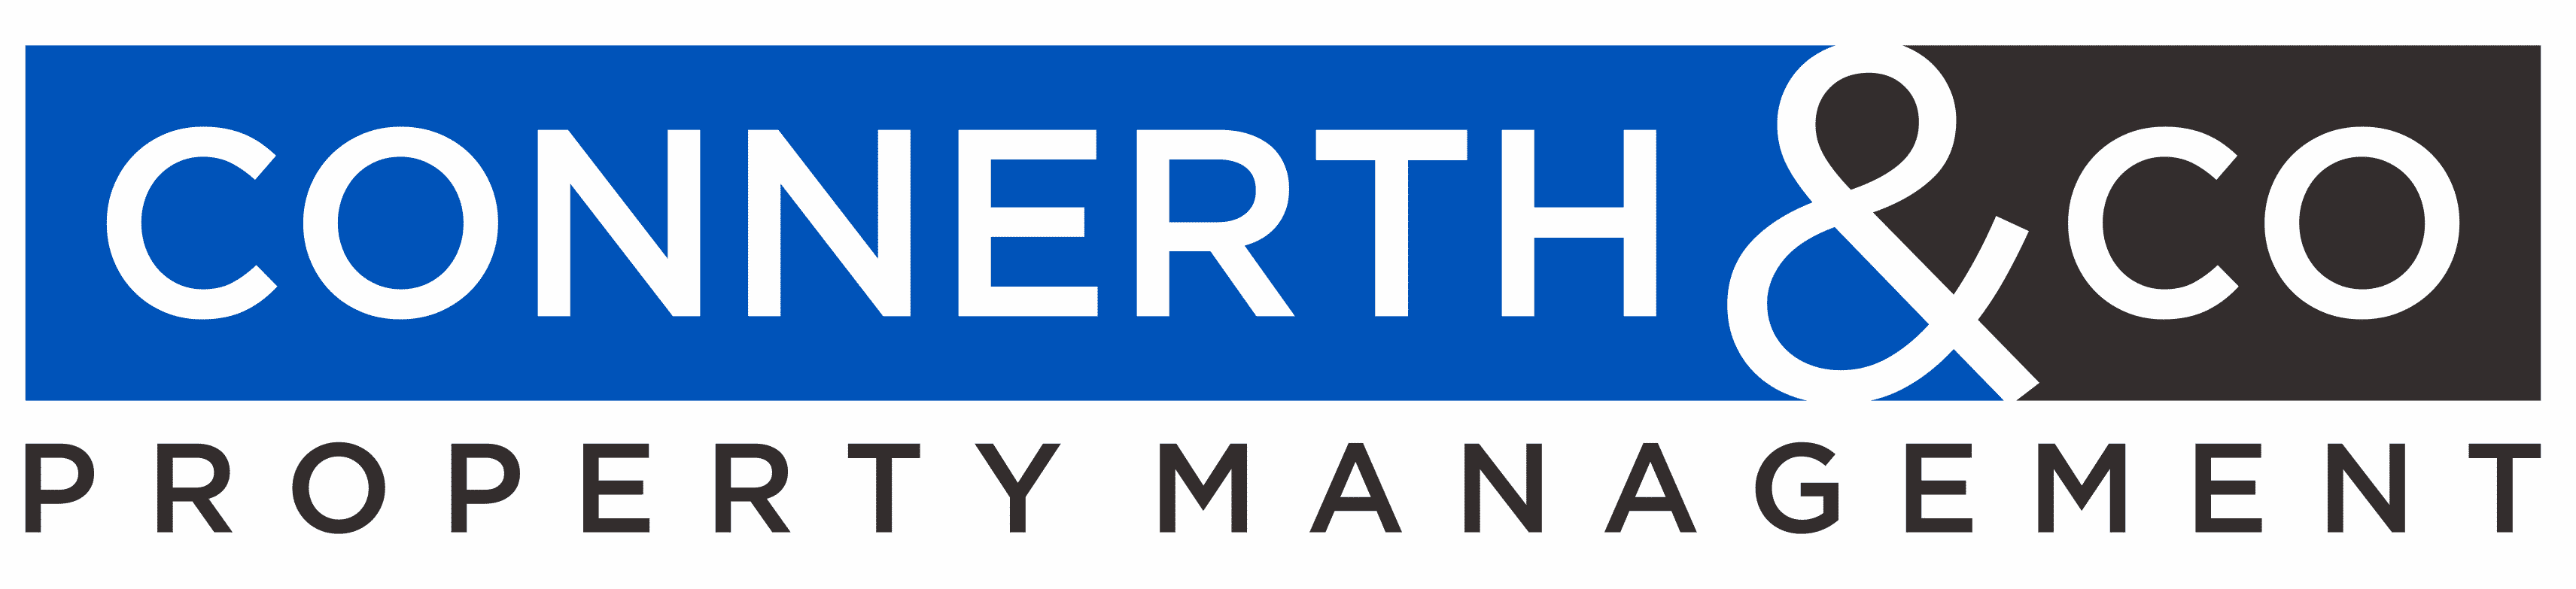 Connerth & Co Logo